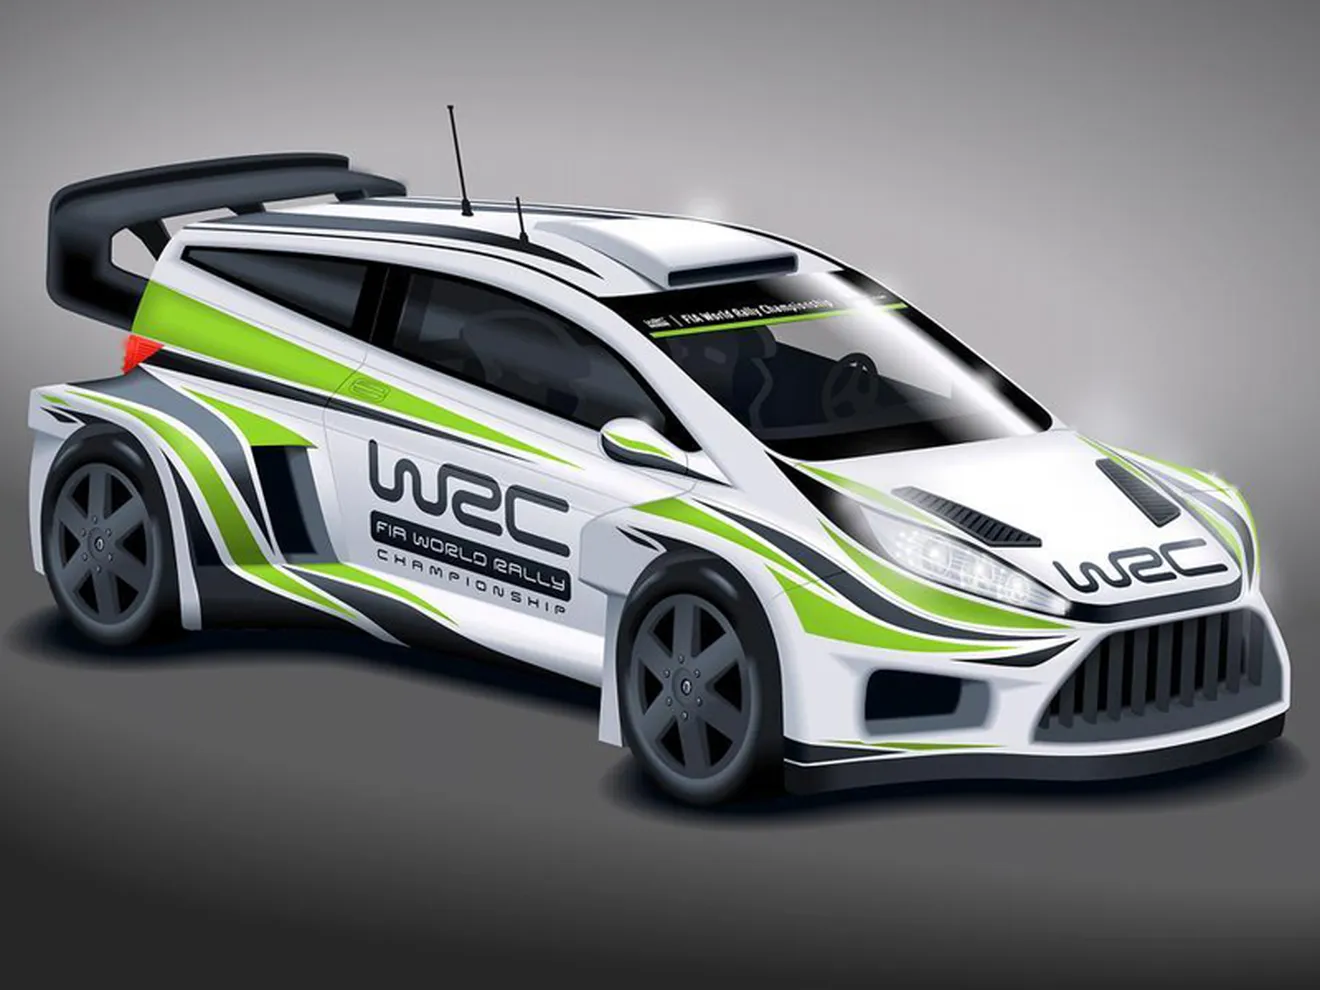 WRC 2017: nuevo reglamento técnico, más potencia y aerodinámica